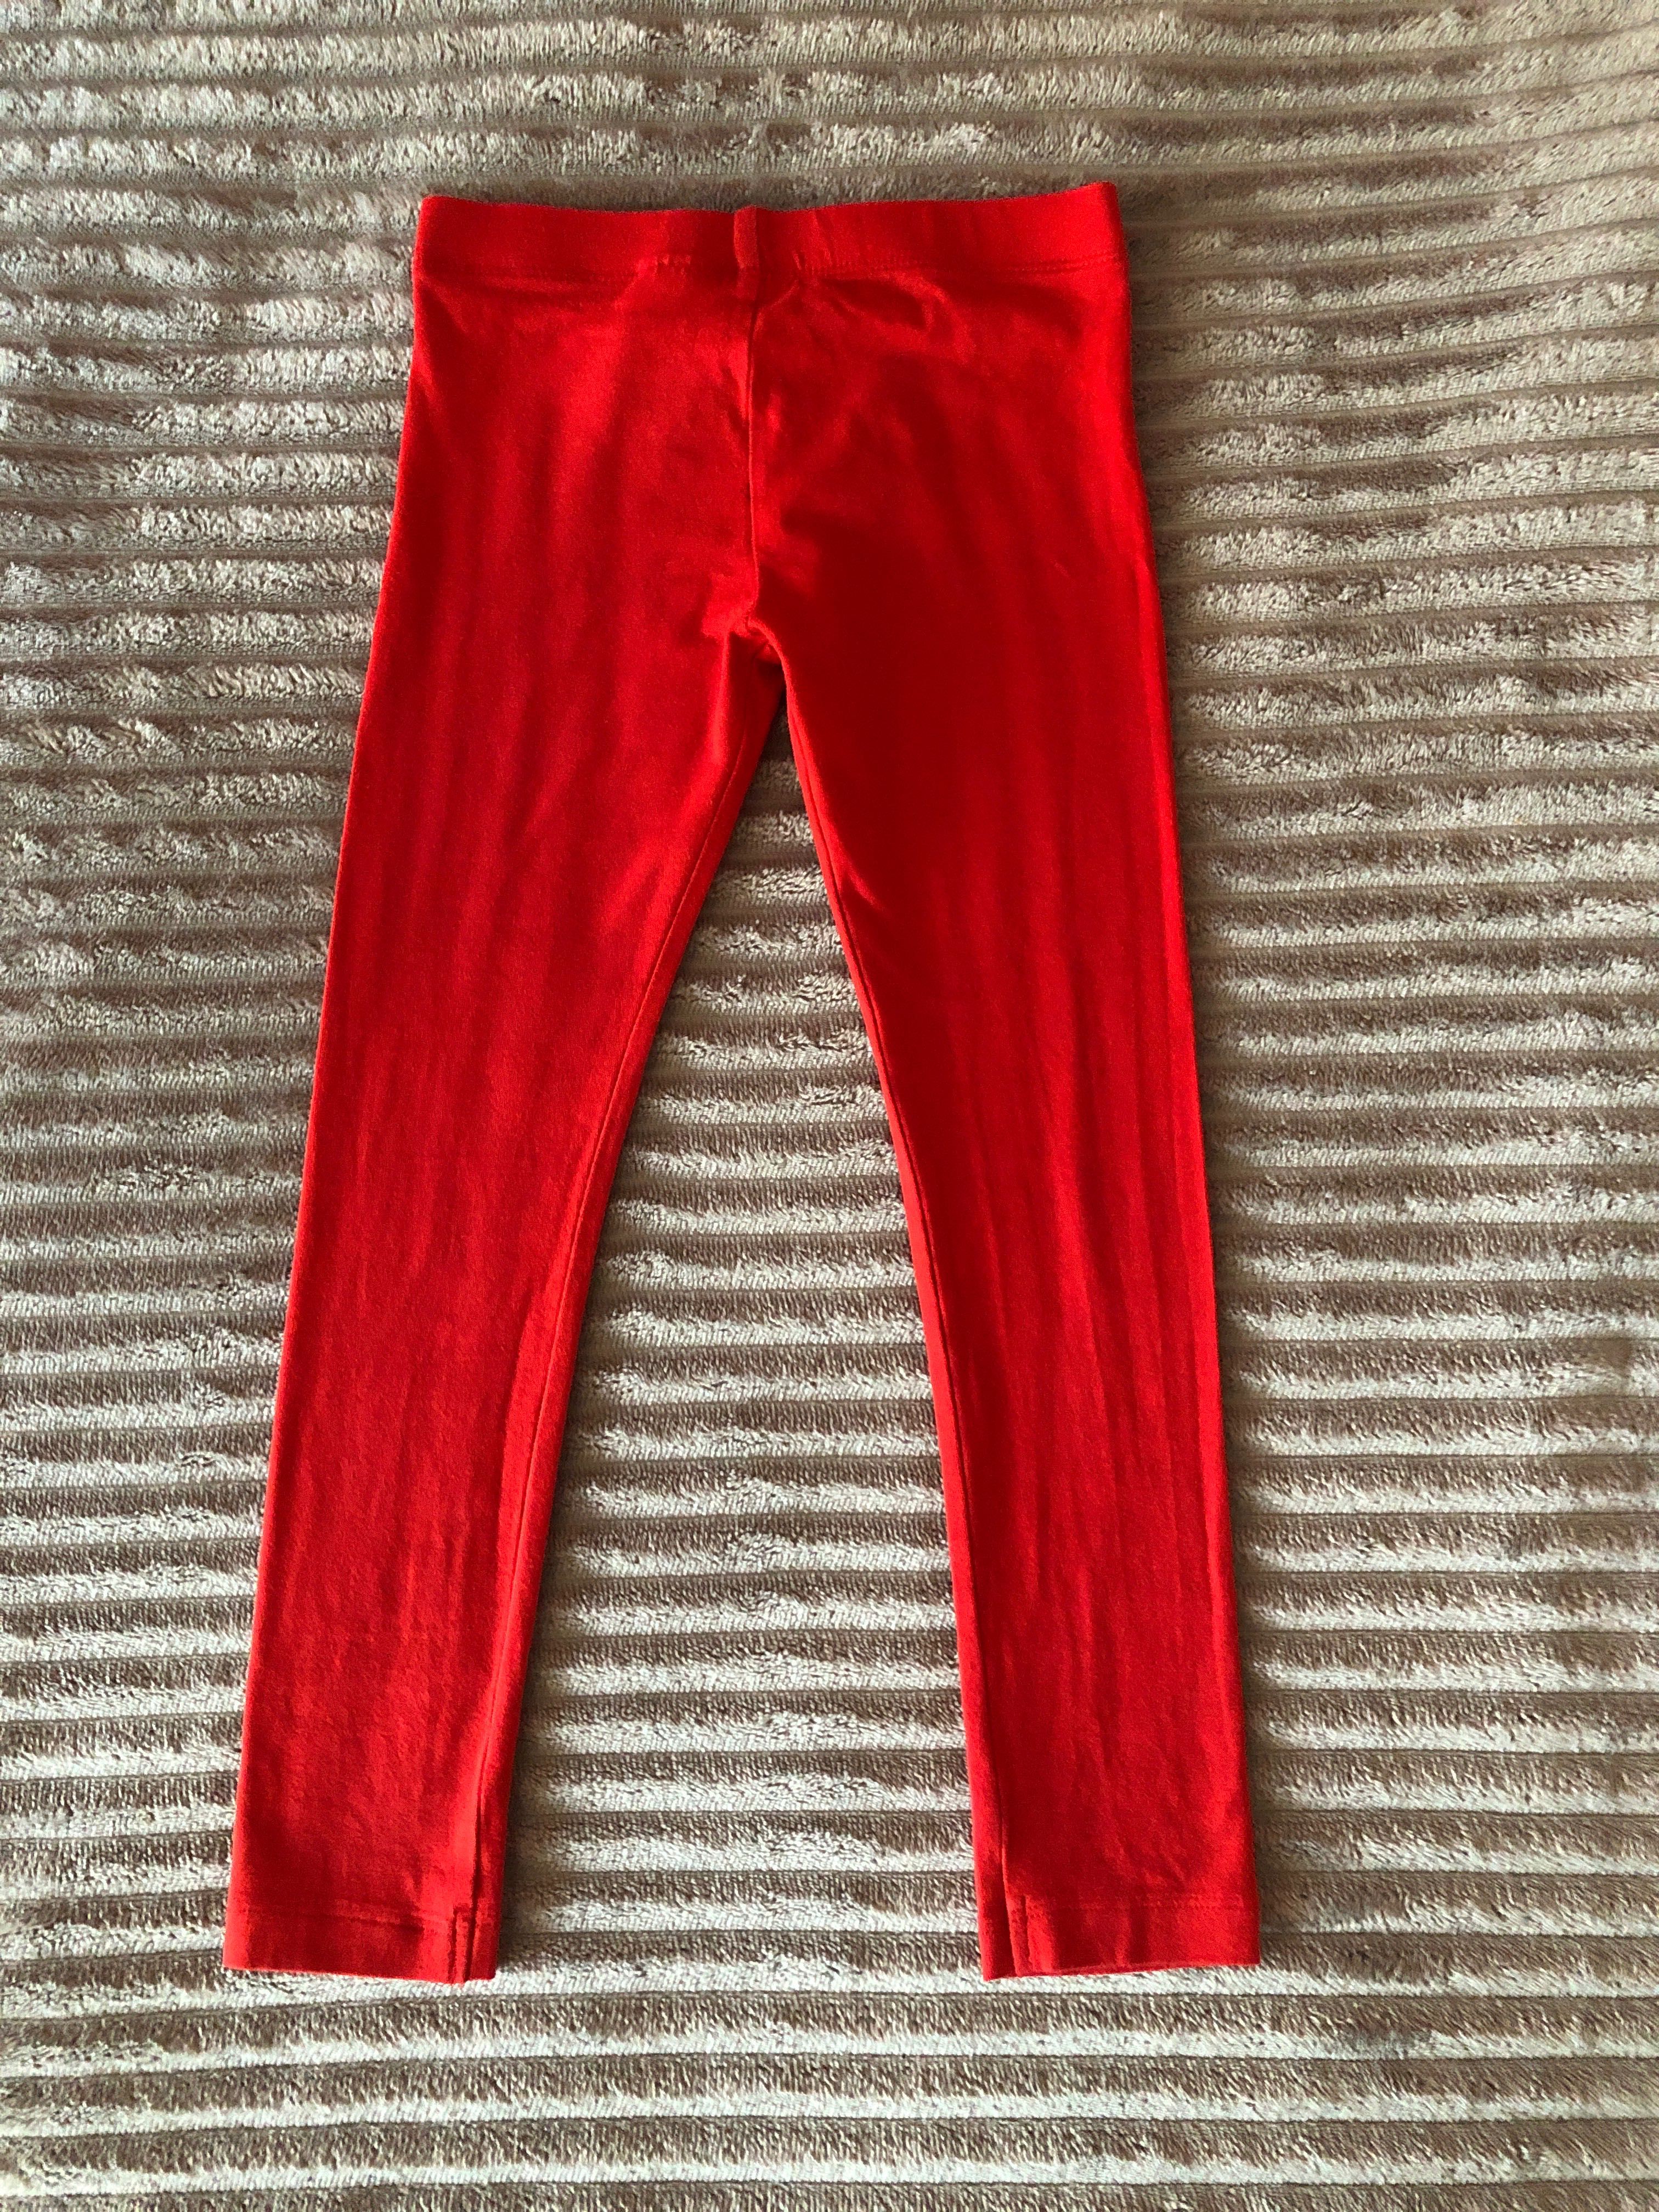 Legginsy czerwone dla dziewczynki, rozmiar 116, Pepco